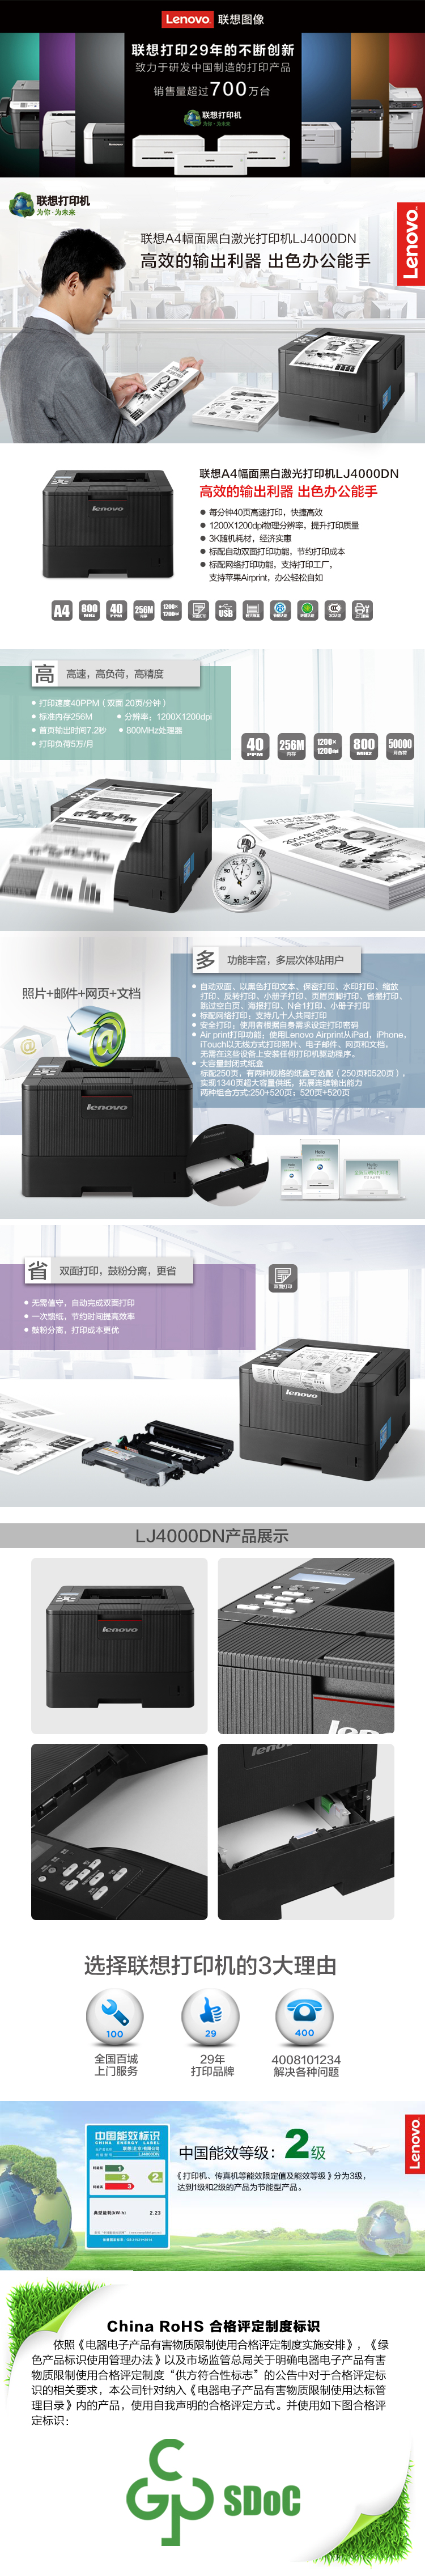 联想激光打印机LJ4000DN